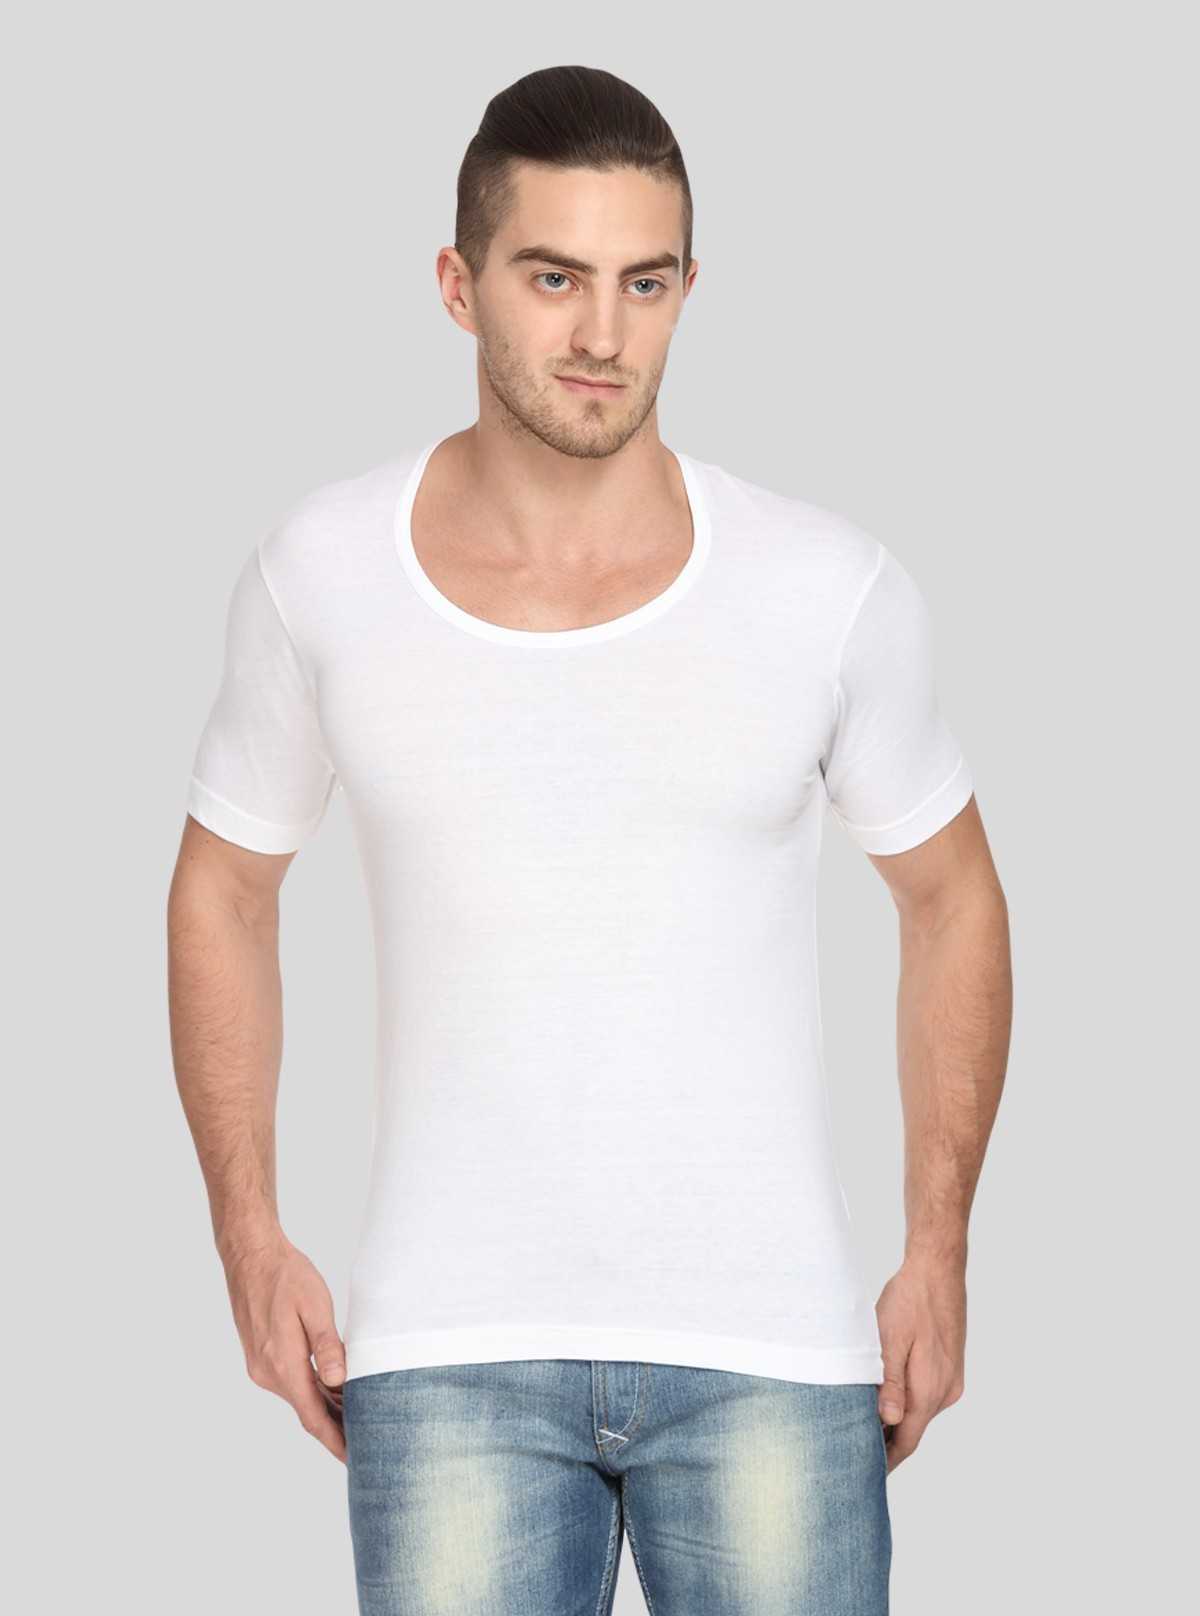 Download Men Cotton Jersey Vest - White Color White Size XL